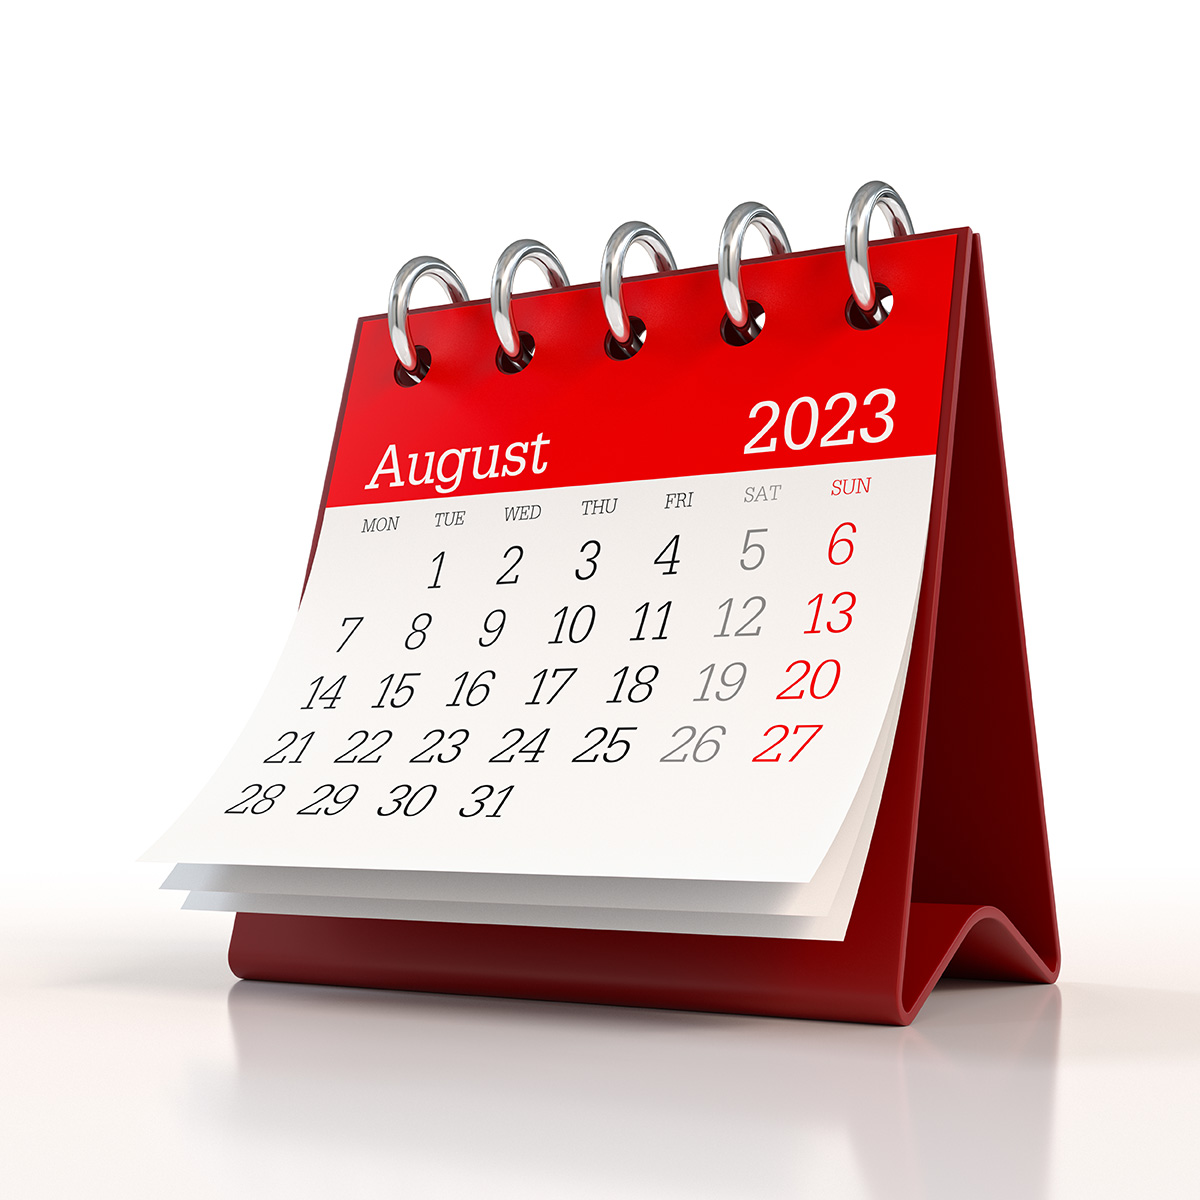 punavalkoinen pöytäkalenteri, jossa esillä elokuu 2023